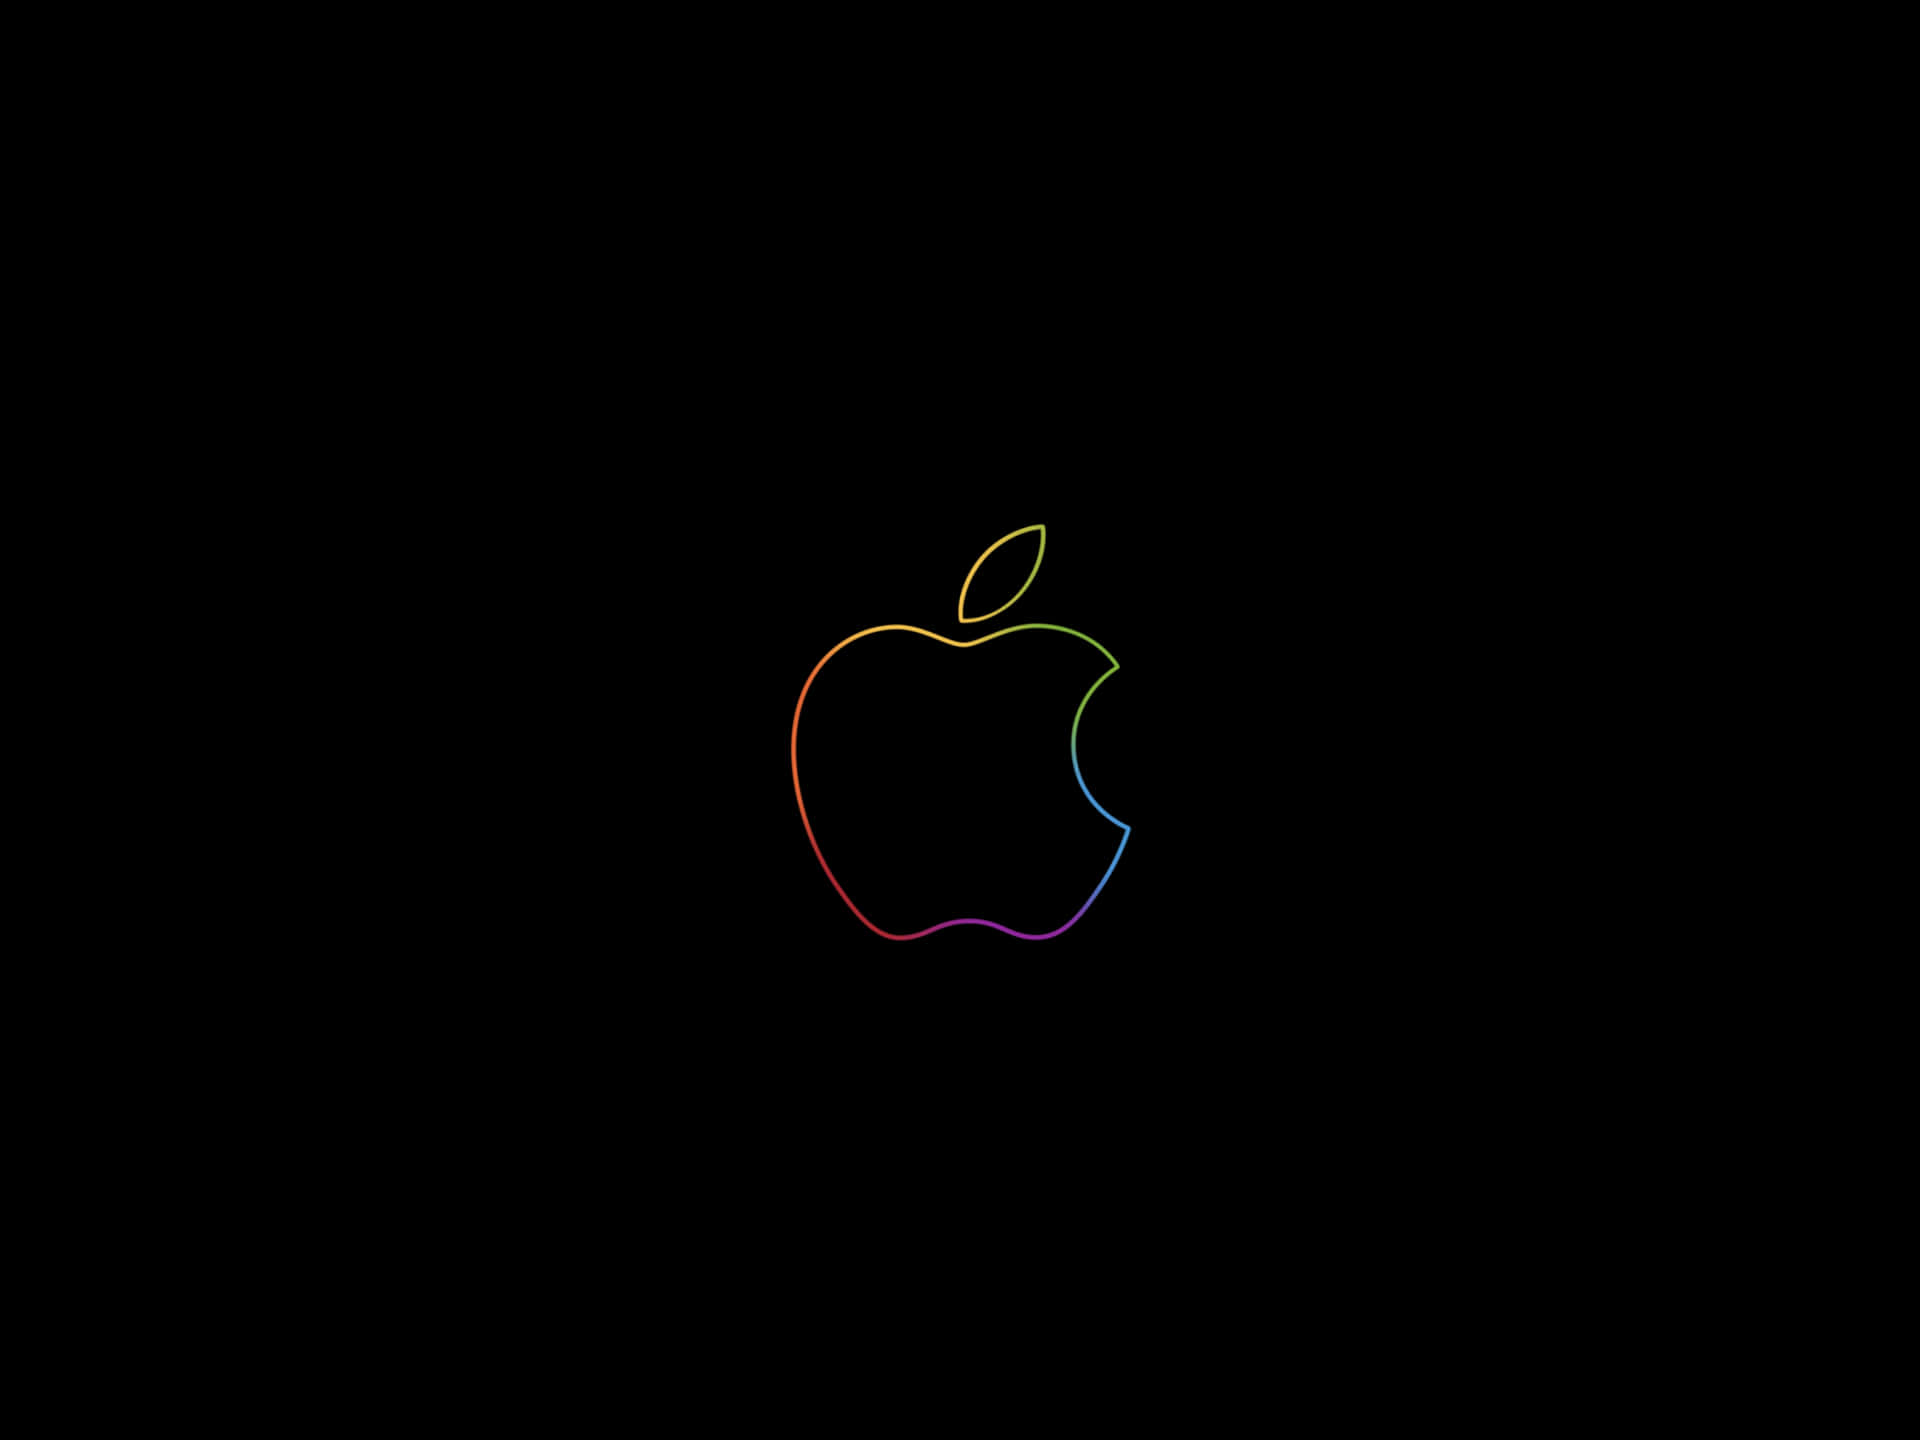 Wallpapersdo Logotipo Da Apple Em Alta Definição. Papel de Parede